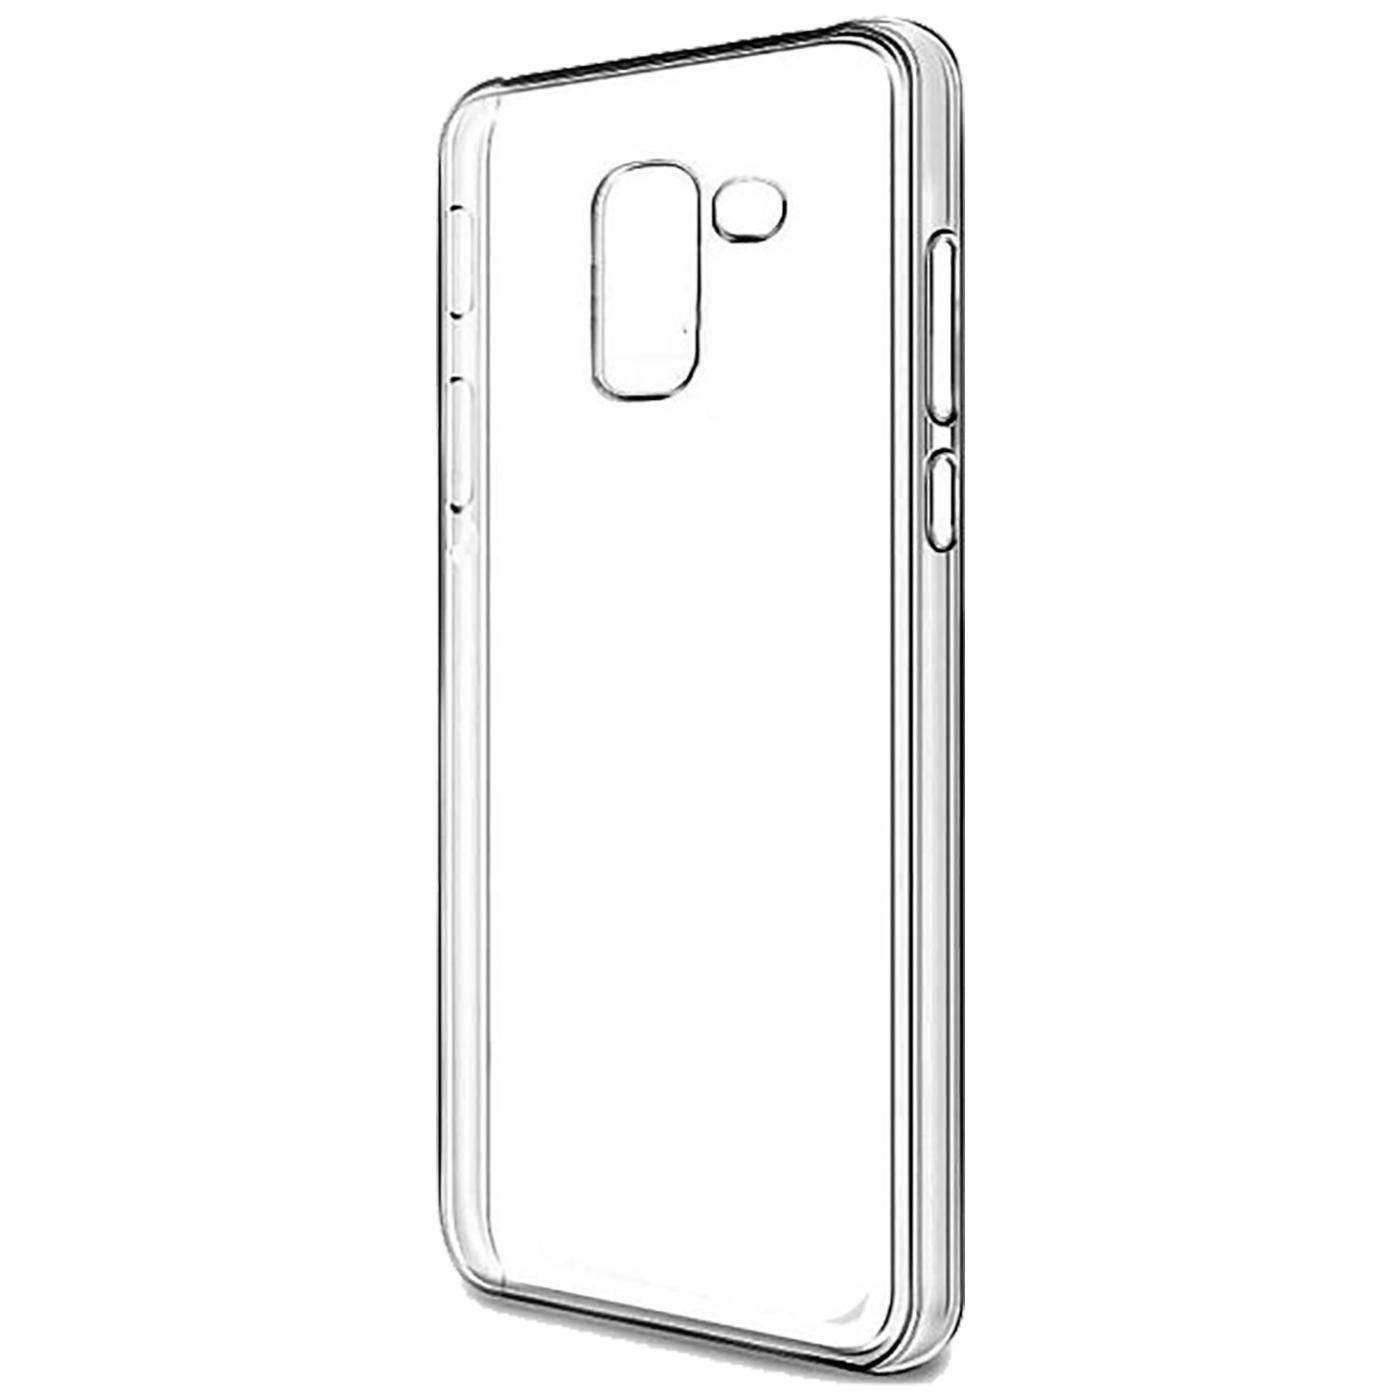 Futrola za mobitel Samsung A8 2018 silikonska